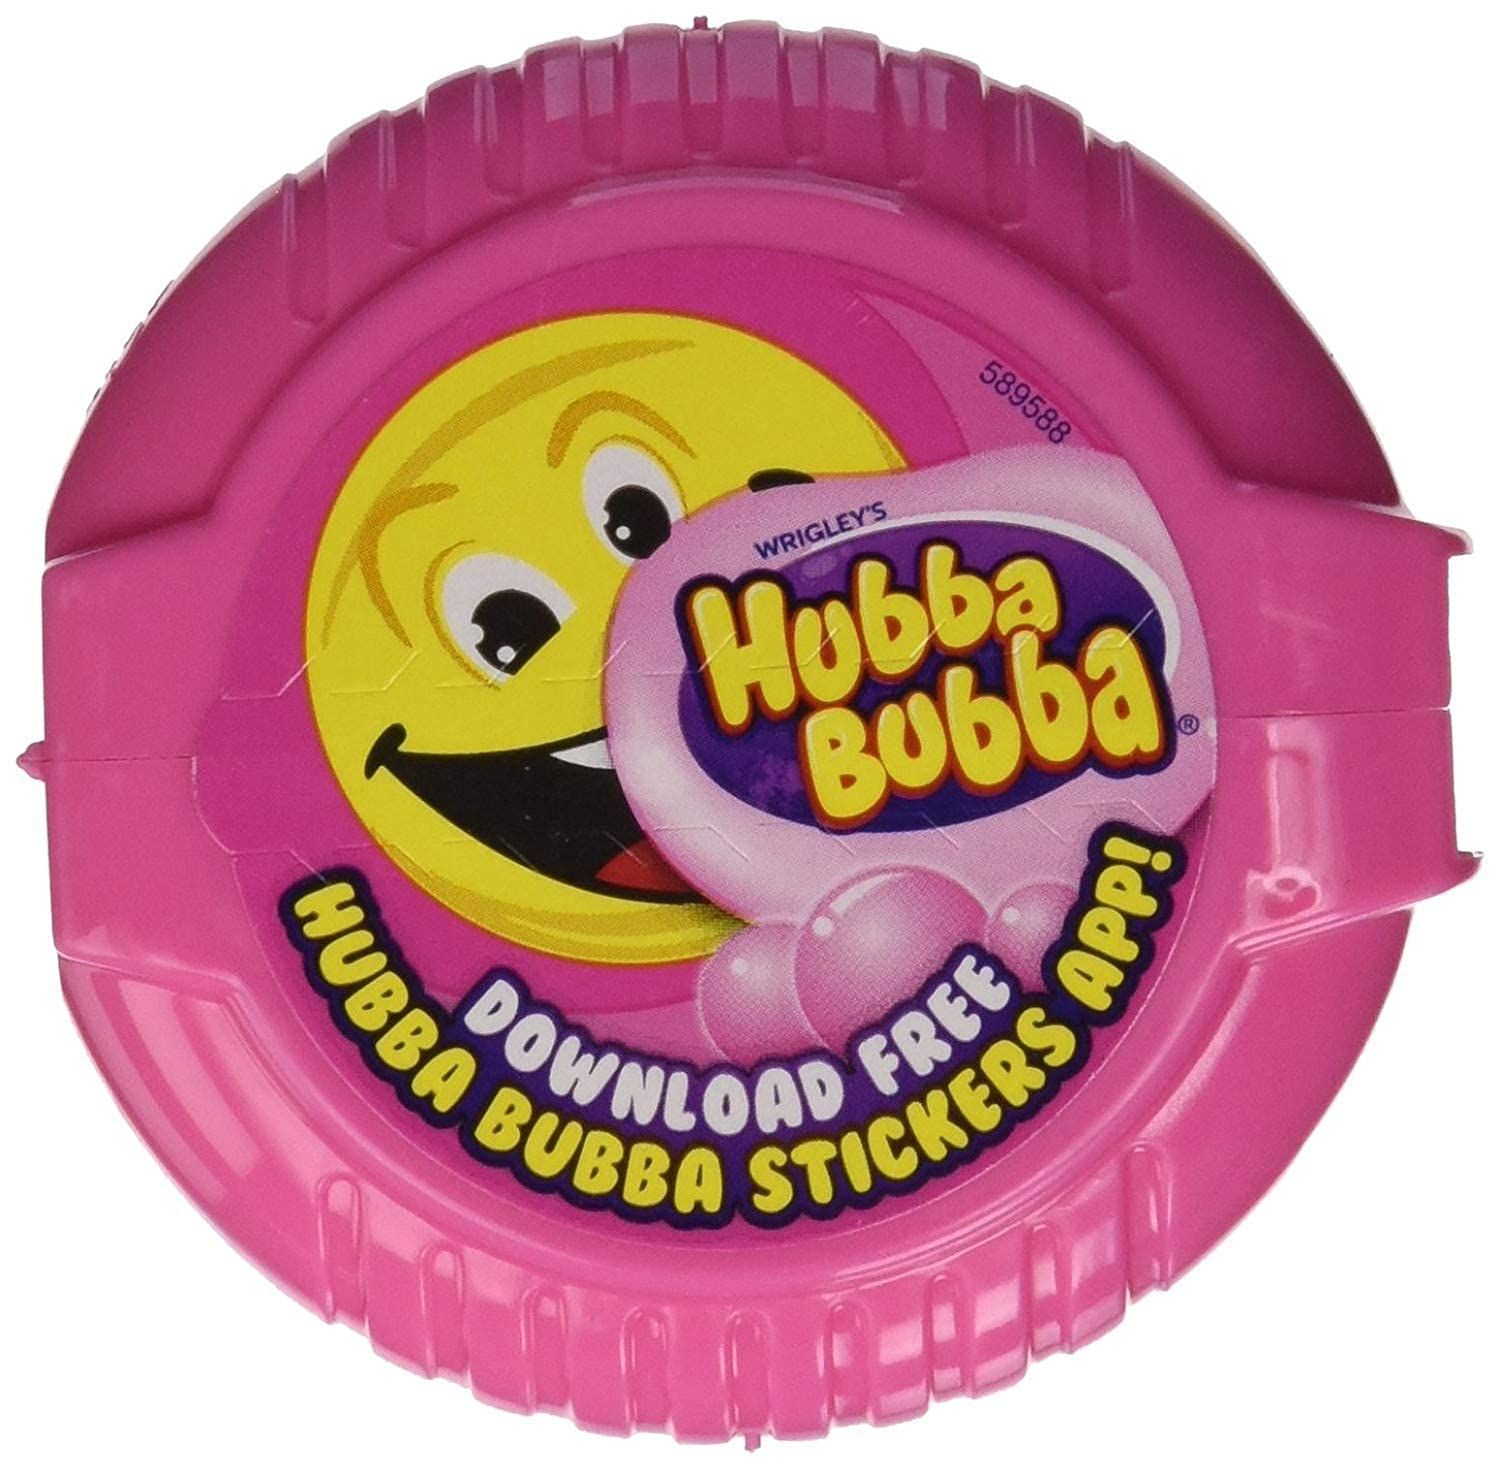 Hubba Bubba Bubble Tape Fancy Fruit Image